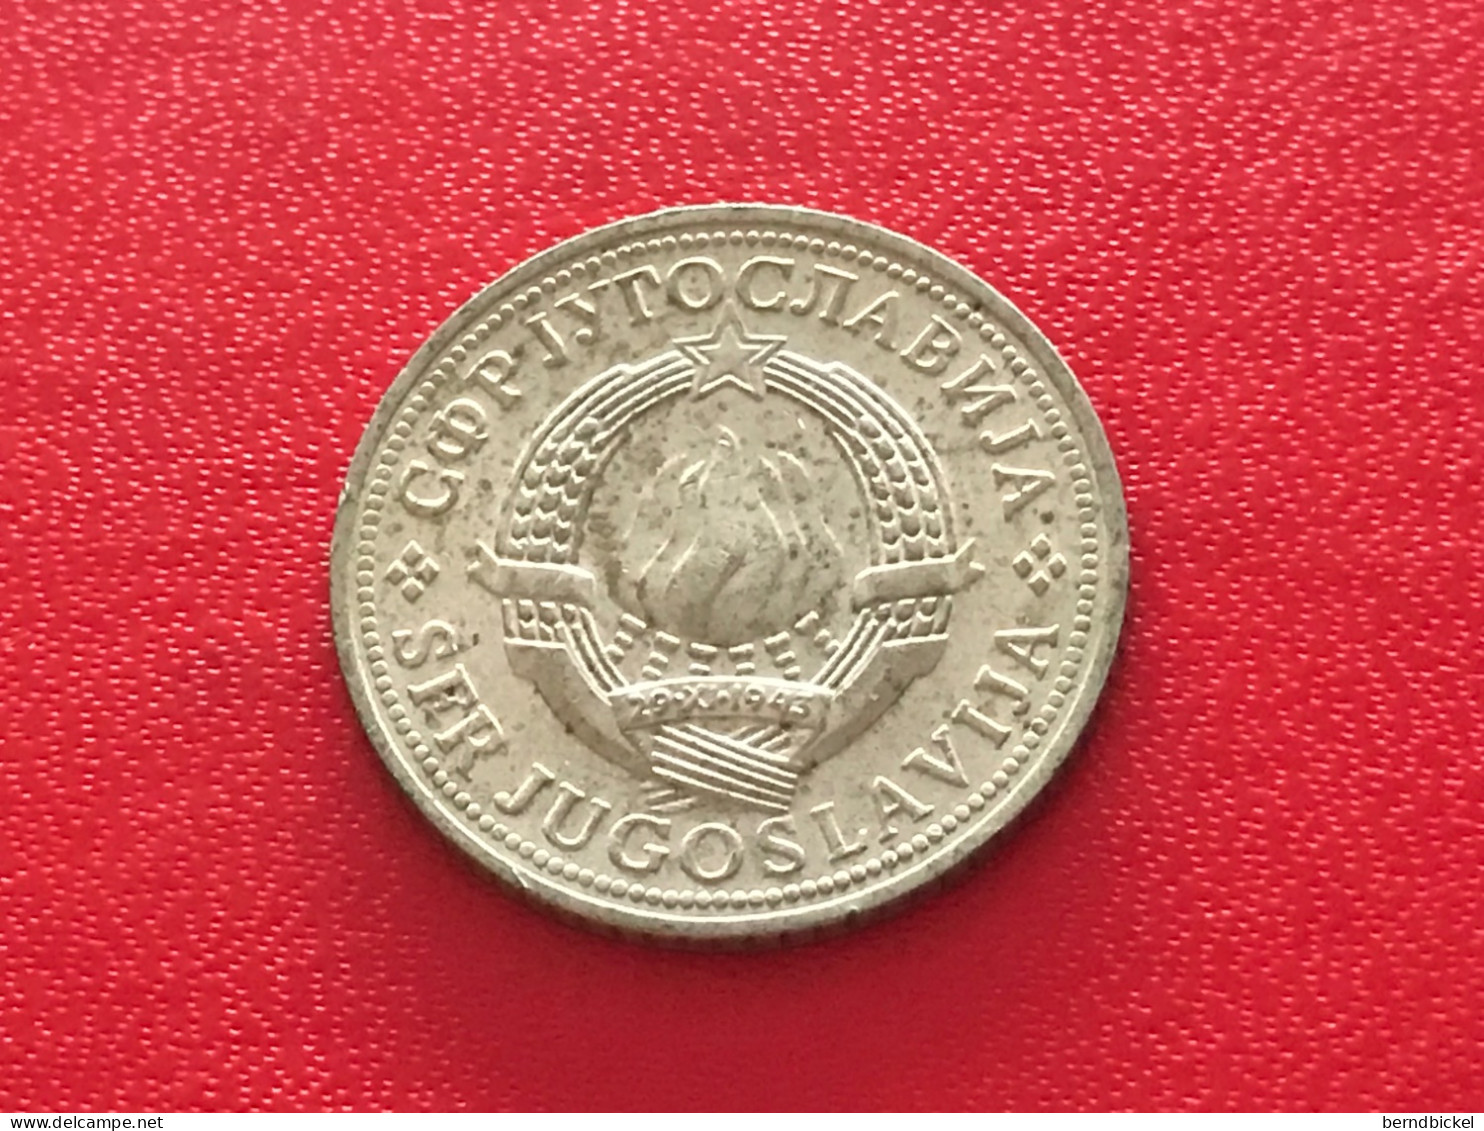 Münze Münzen Umlaufmünze Jugoslawien 2 Dinar 1978 - Yugoslavia